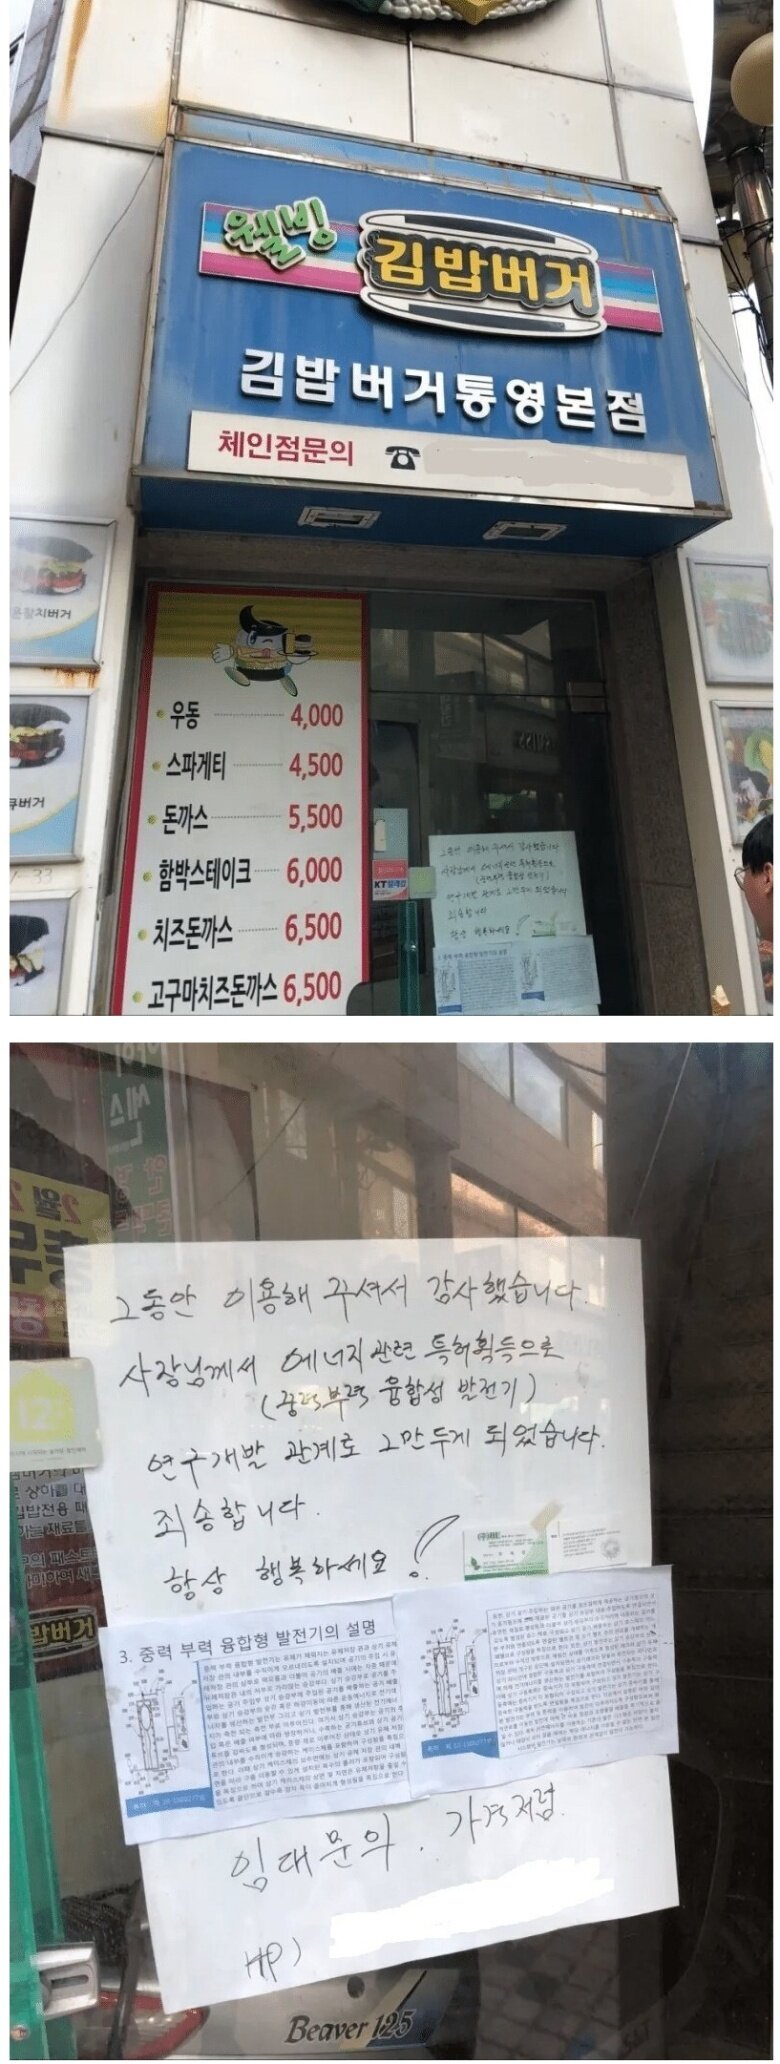 잘나가던 김밥버거집이 폐점한 이유